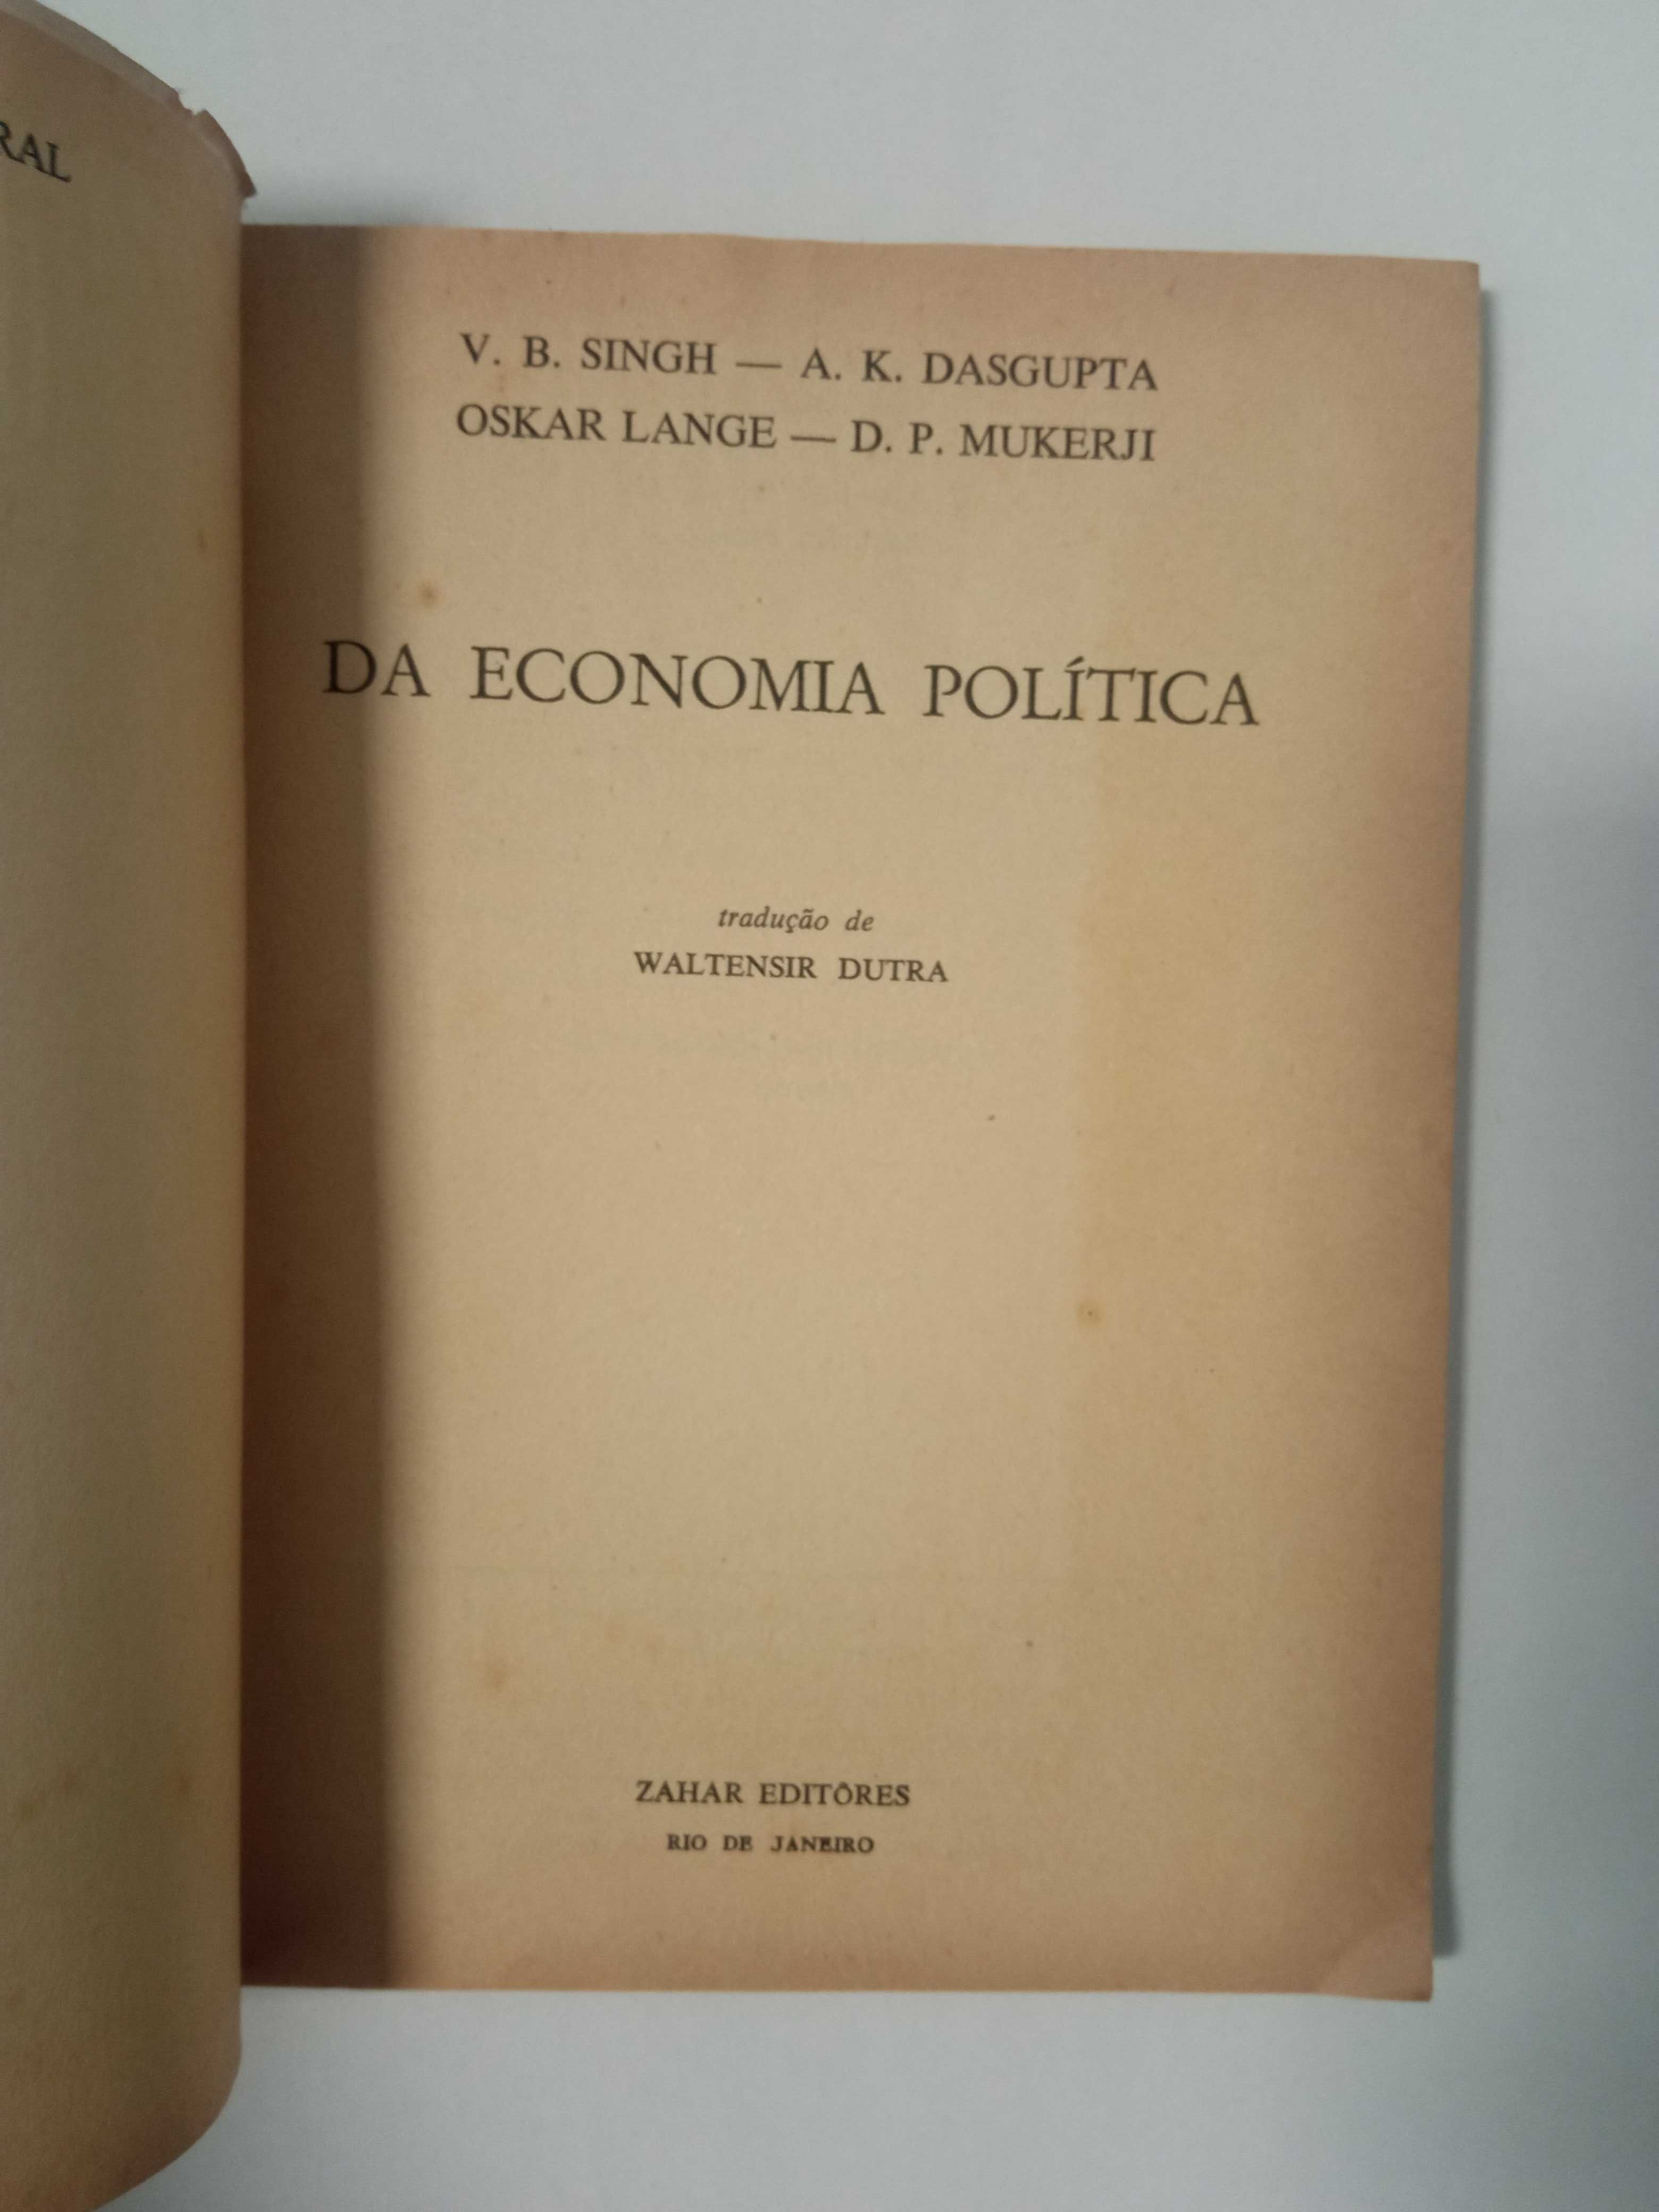 Da economia política, de V. B. Singh entre outros